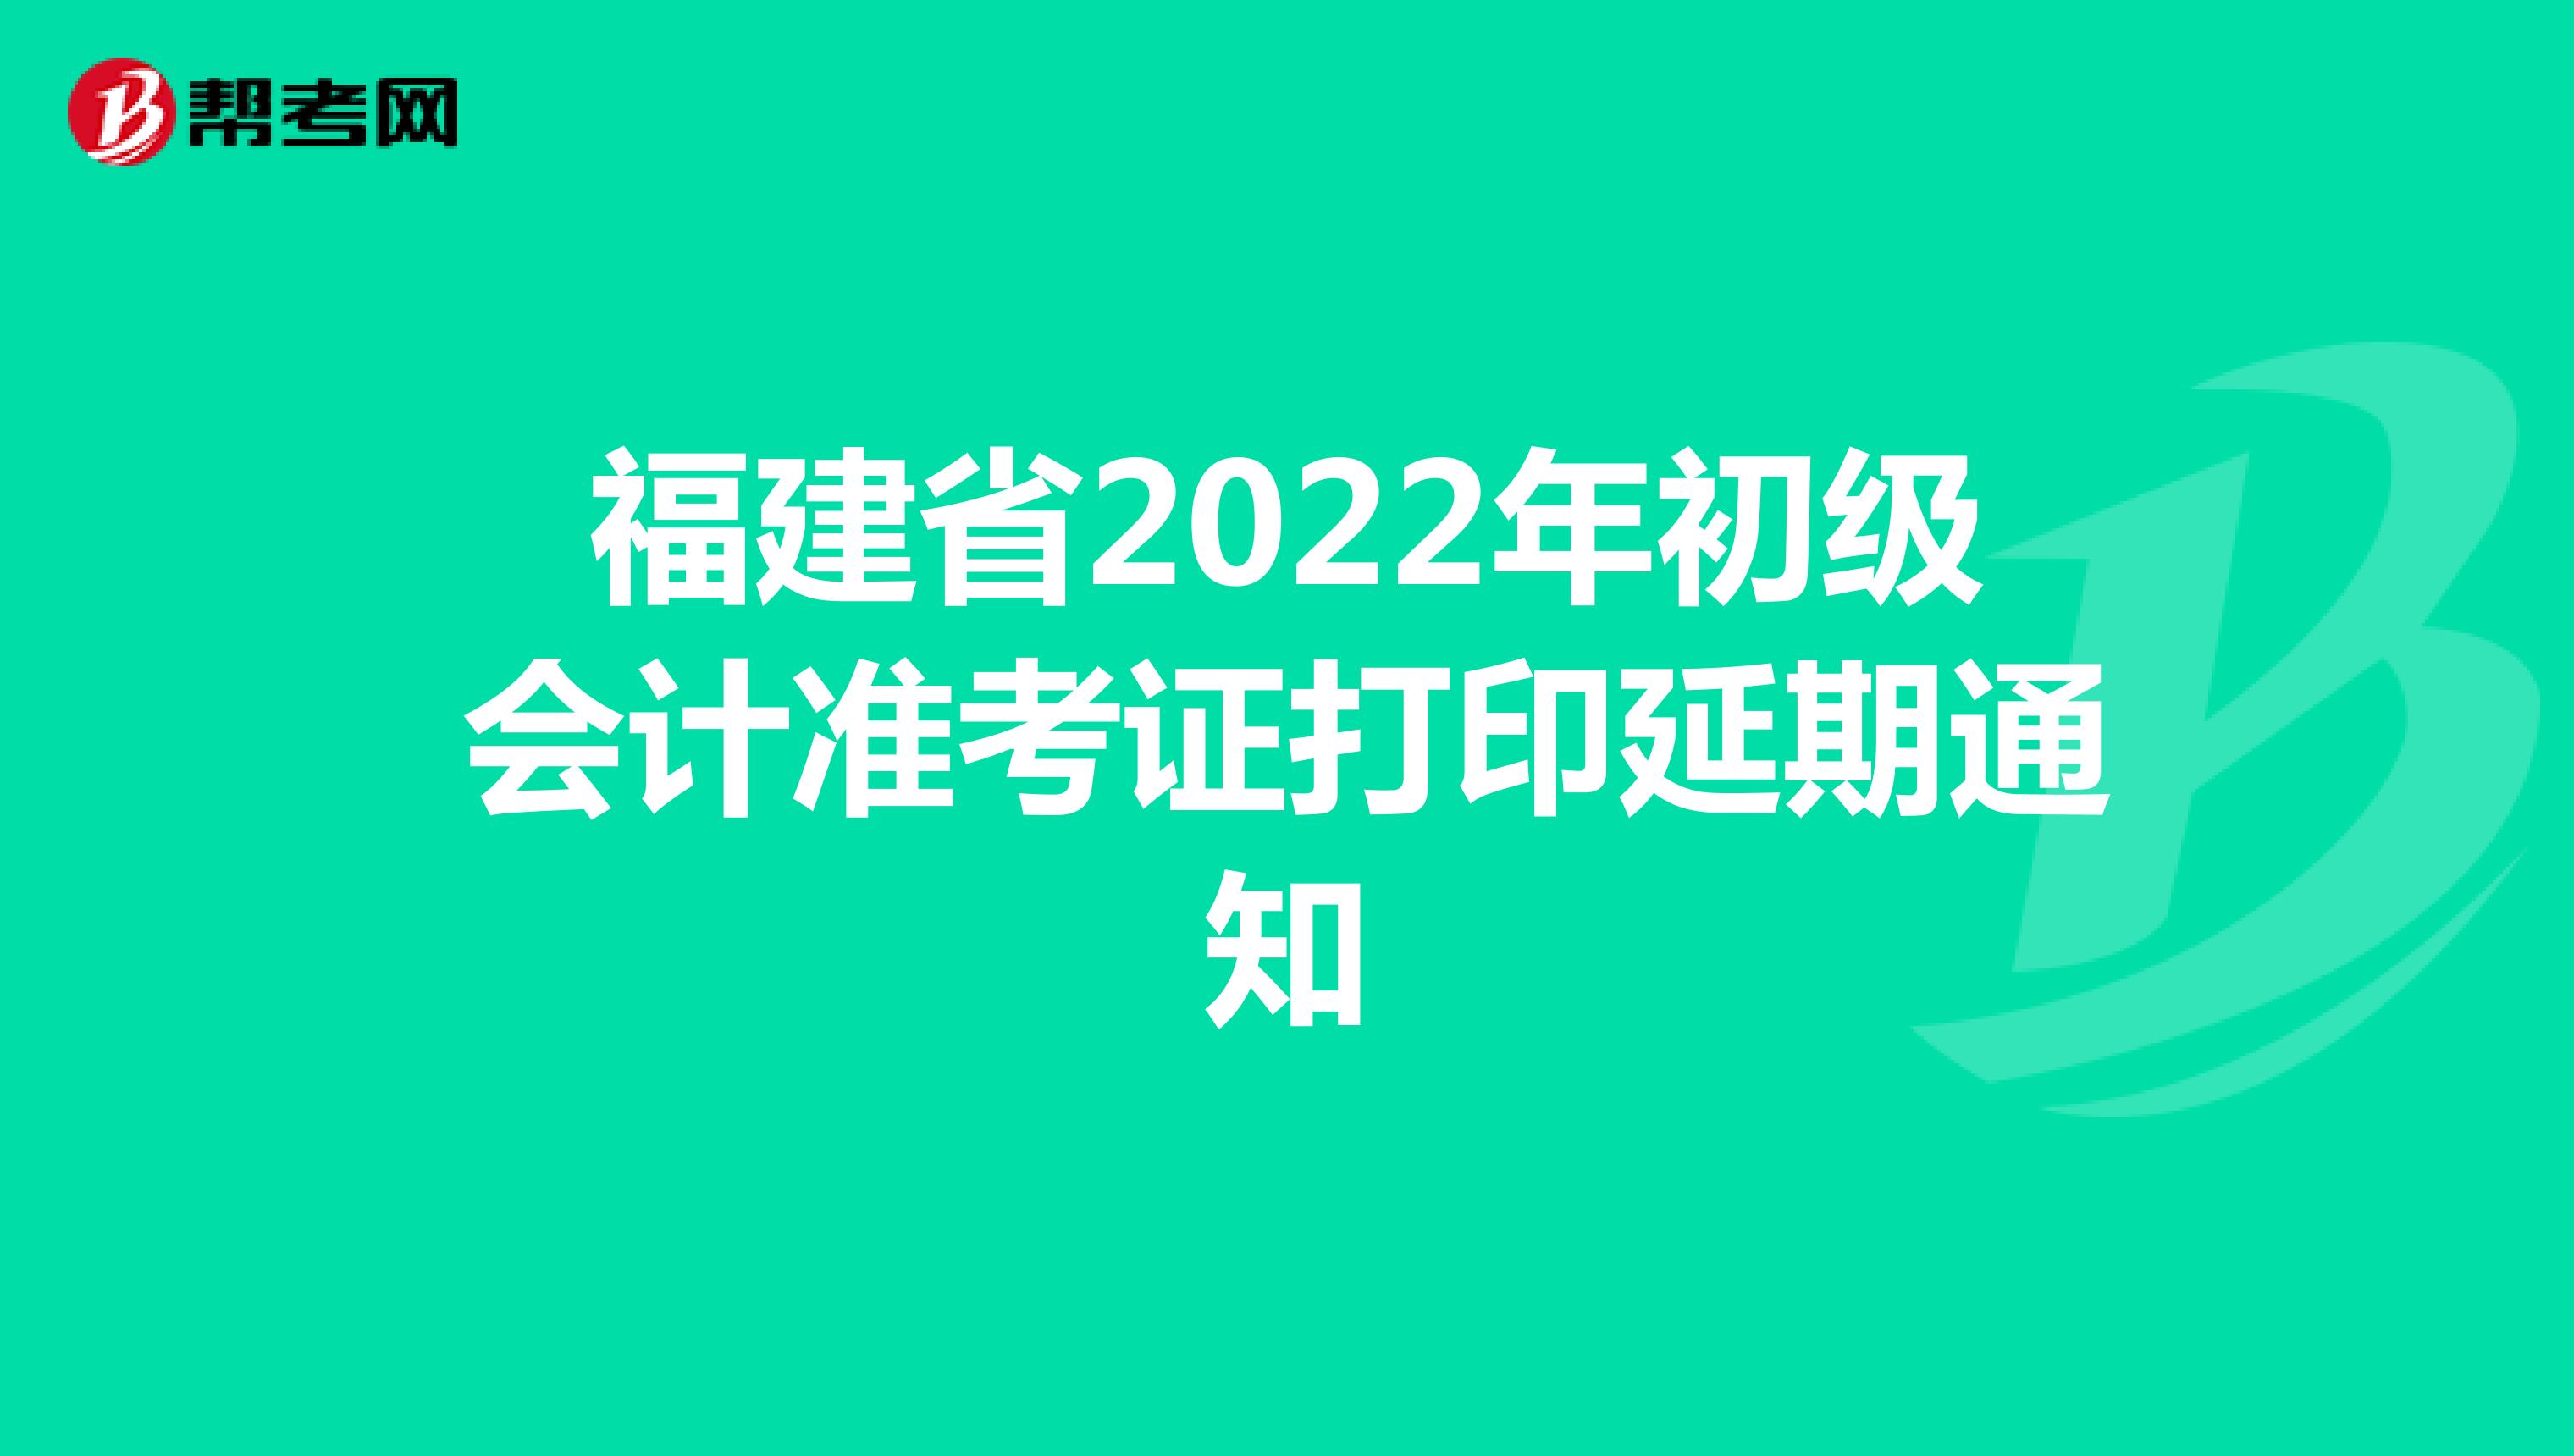 福建省2022年初级会计准考证打印延期通知